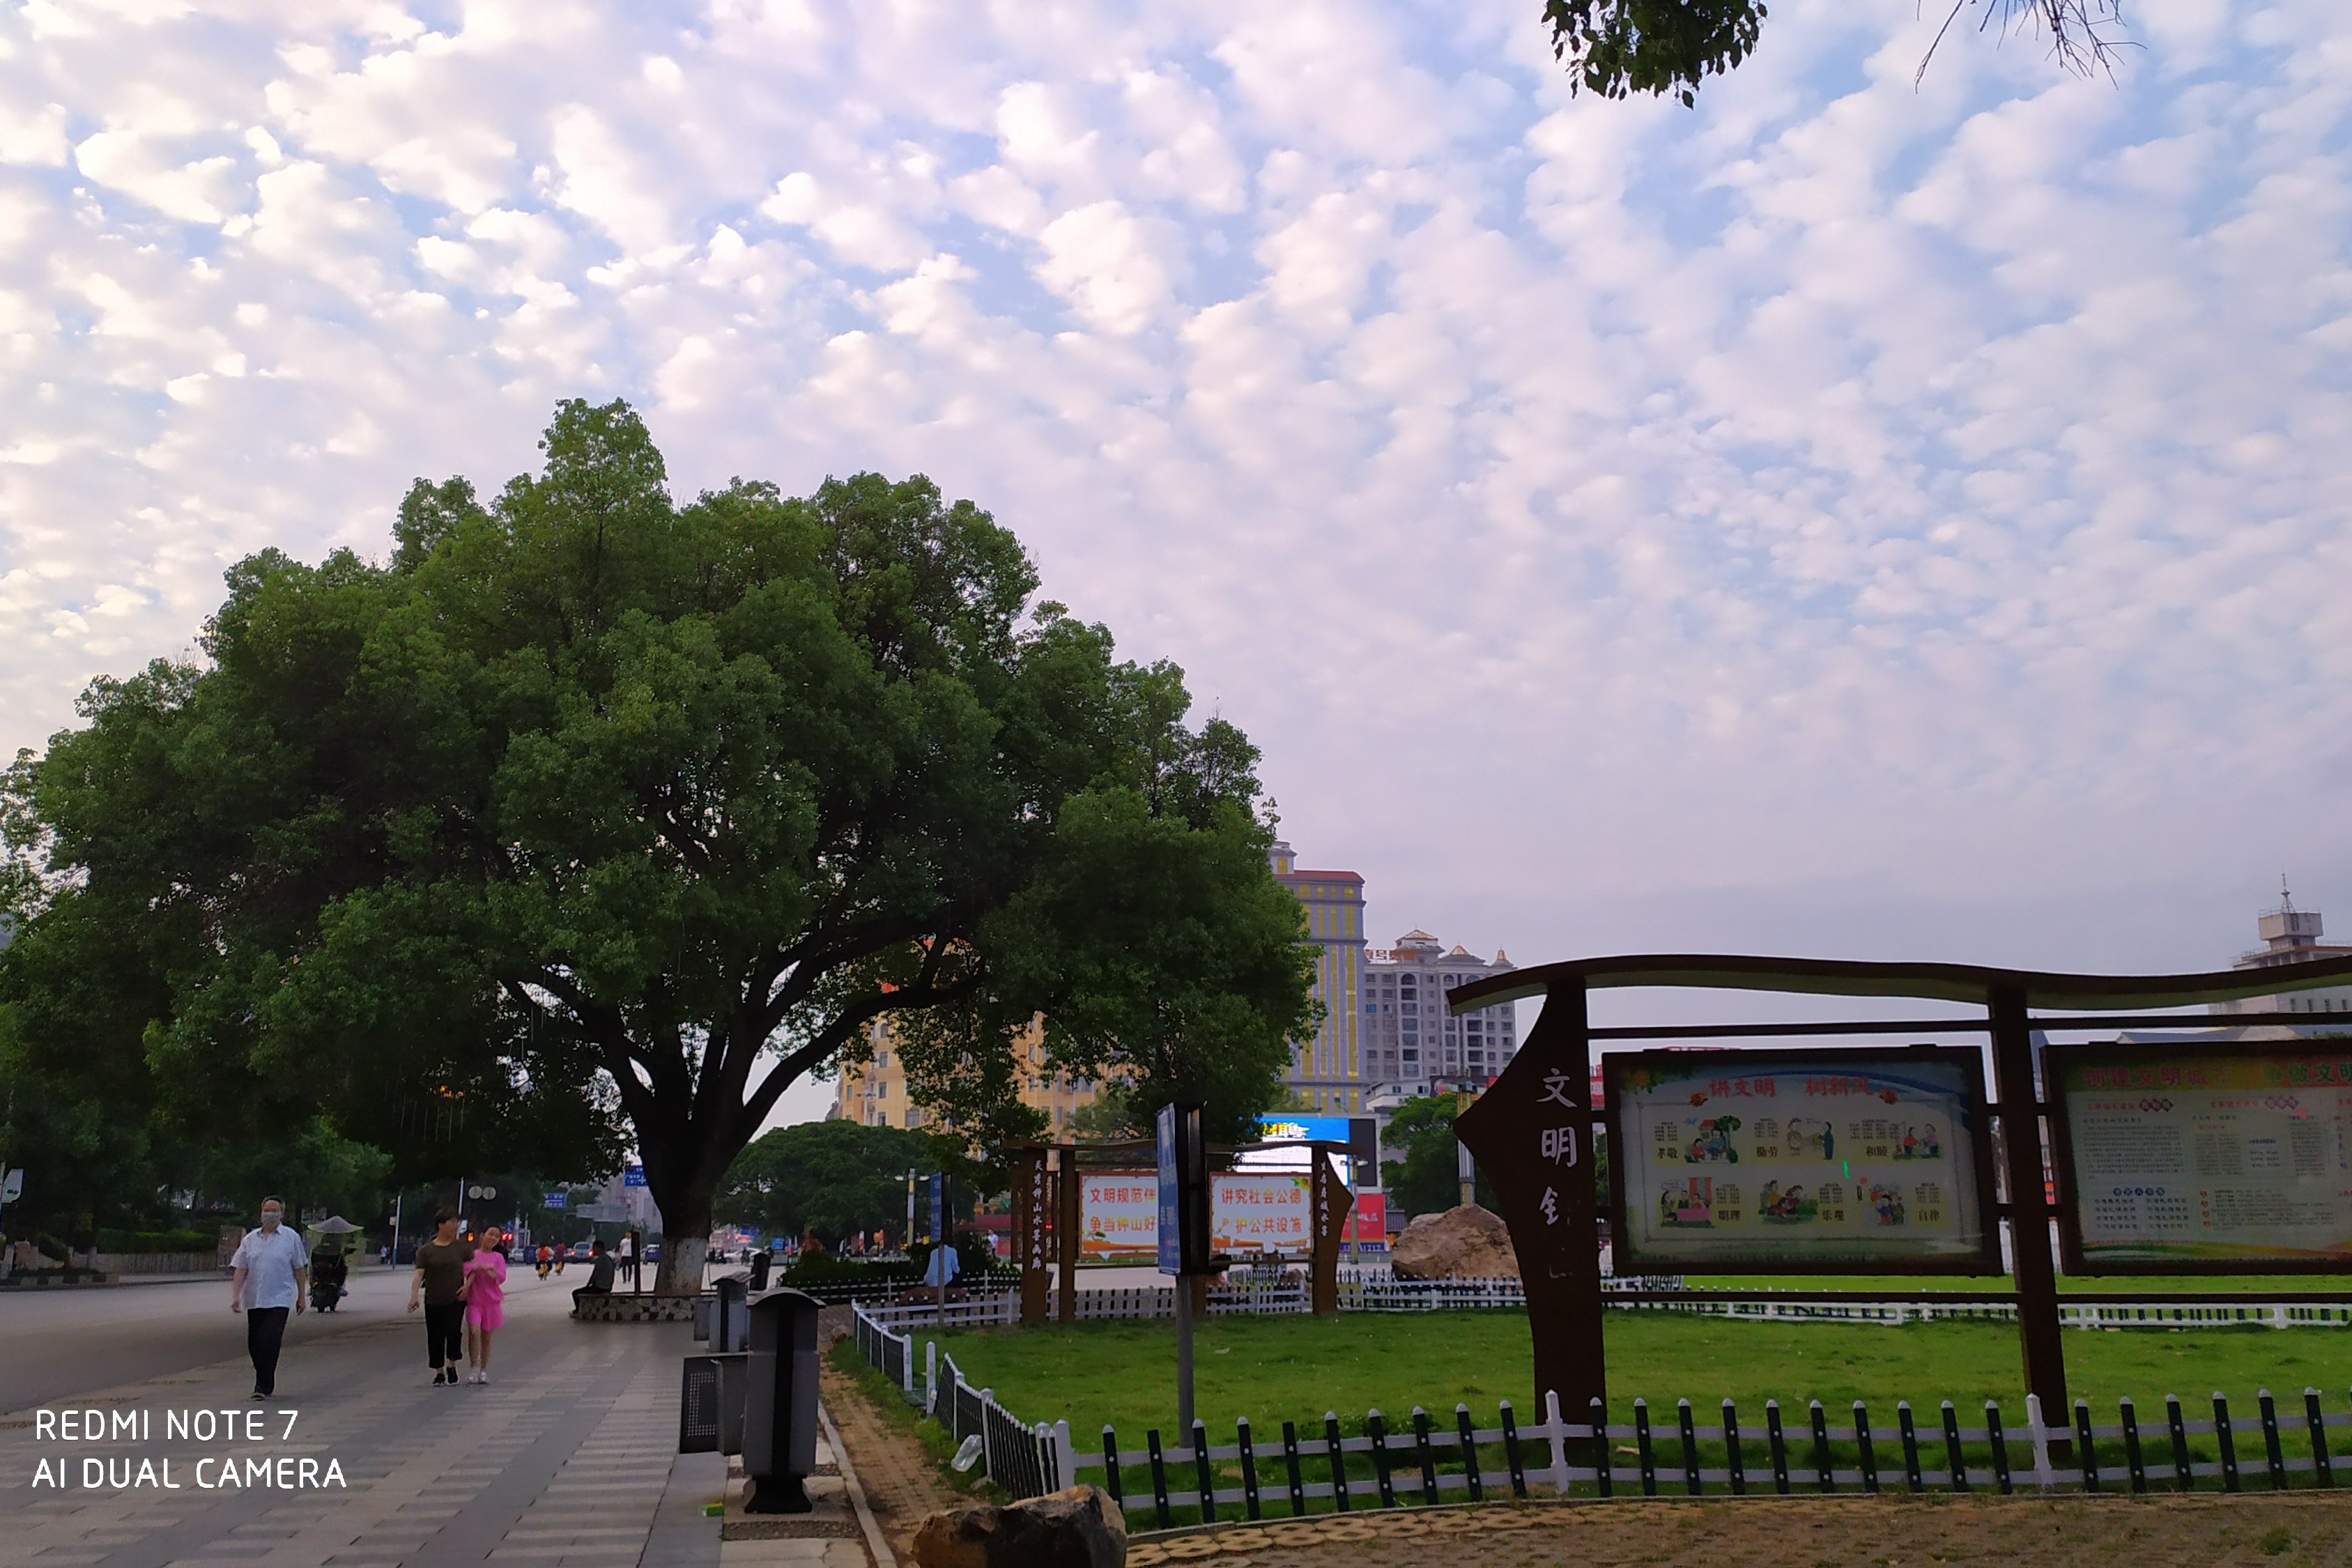 广西贺州钟山广场旁边的那棵大樟树到底是130年还是200年树龄